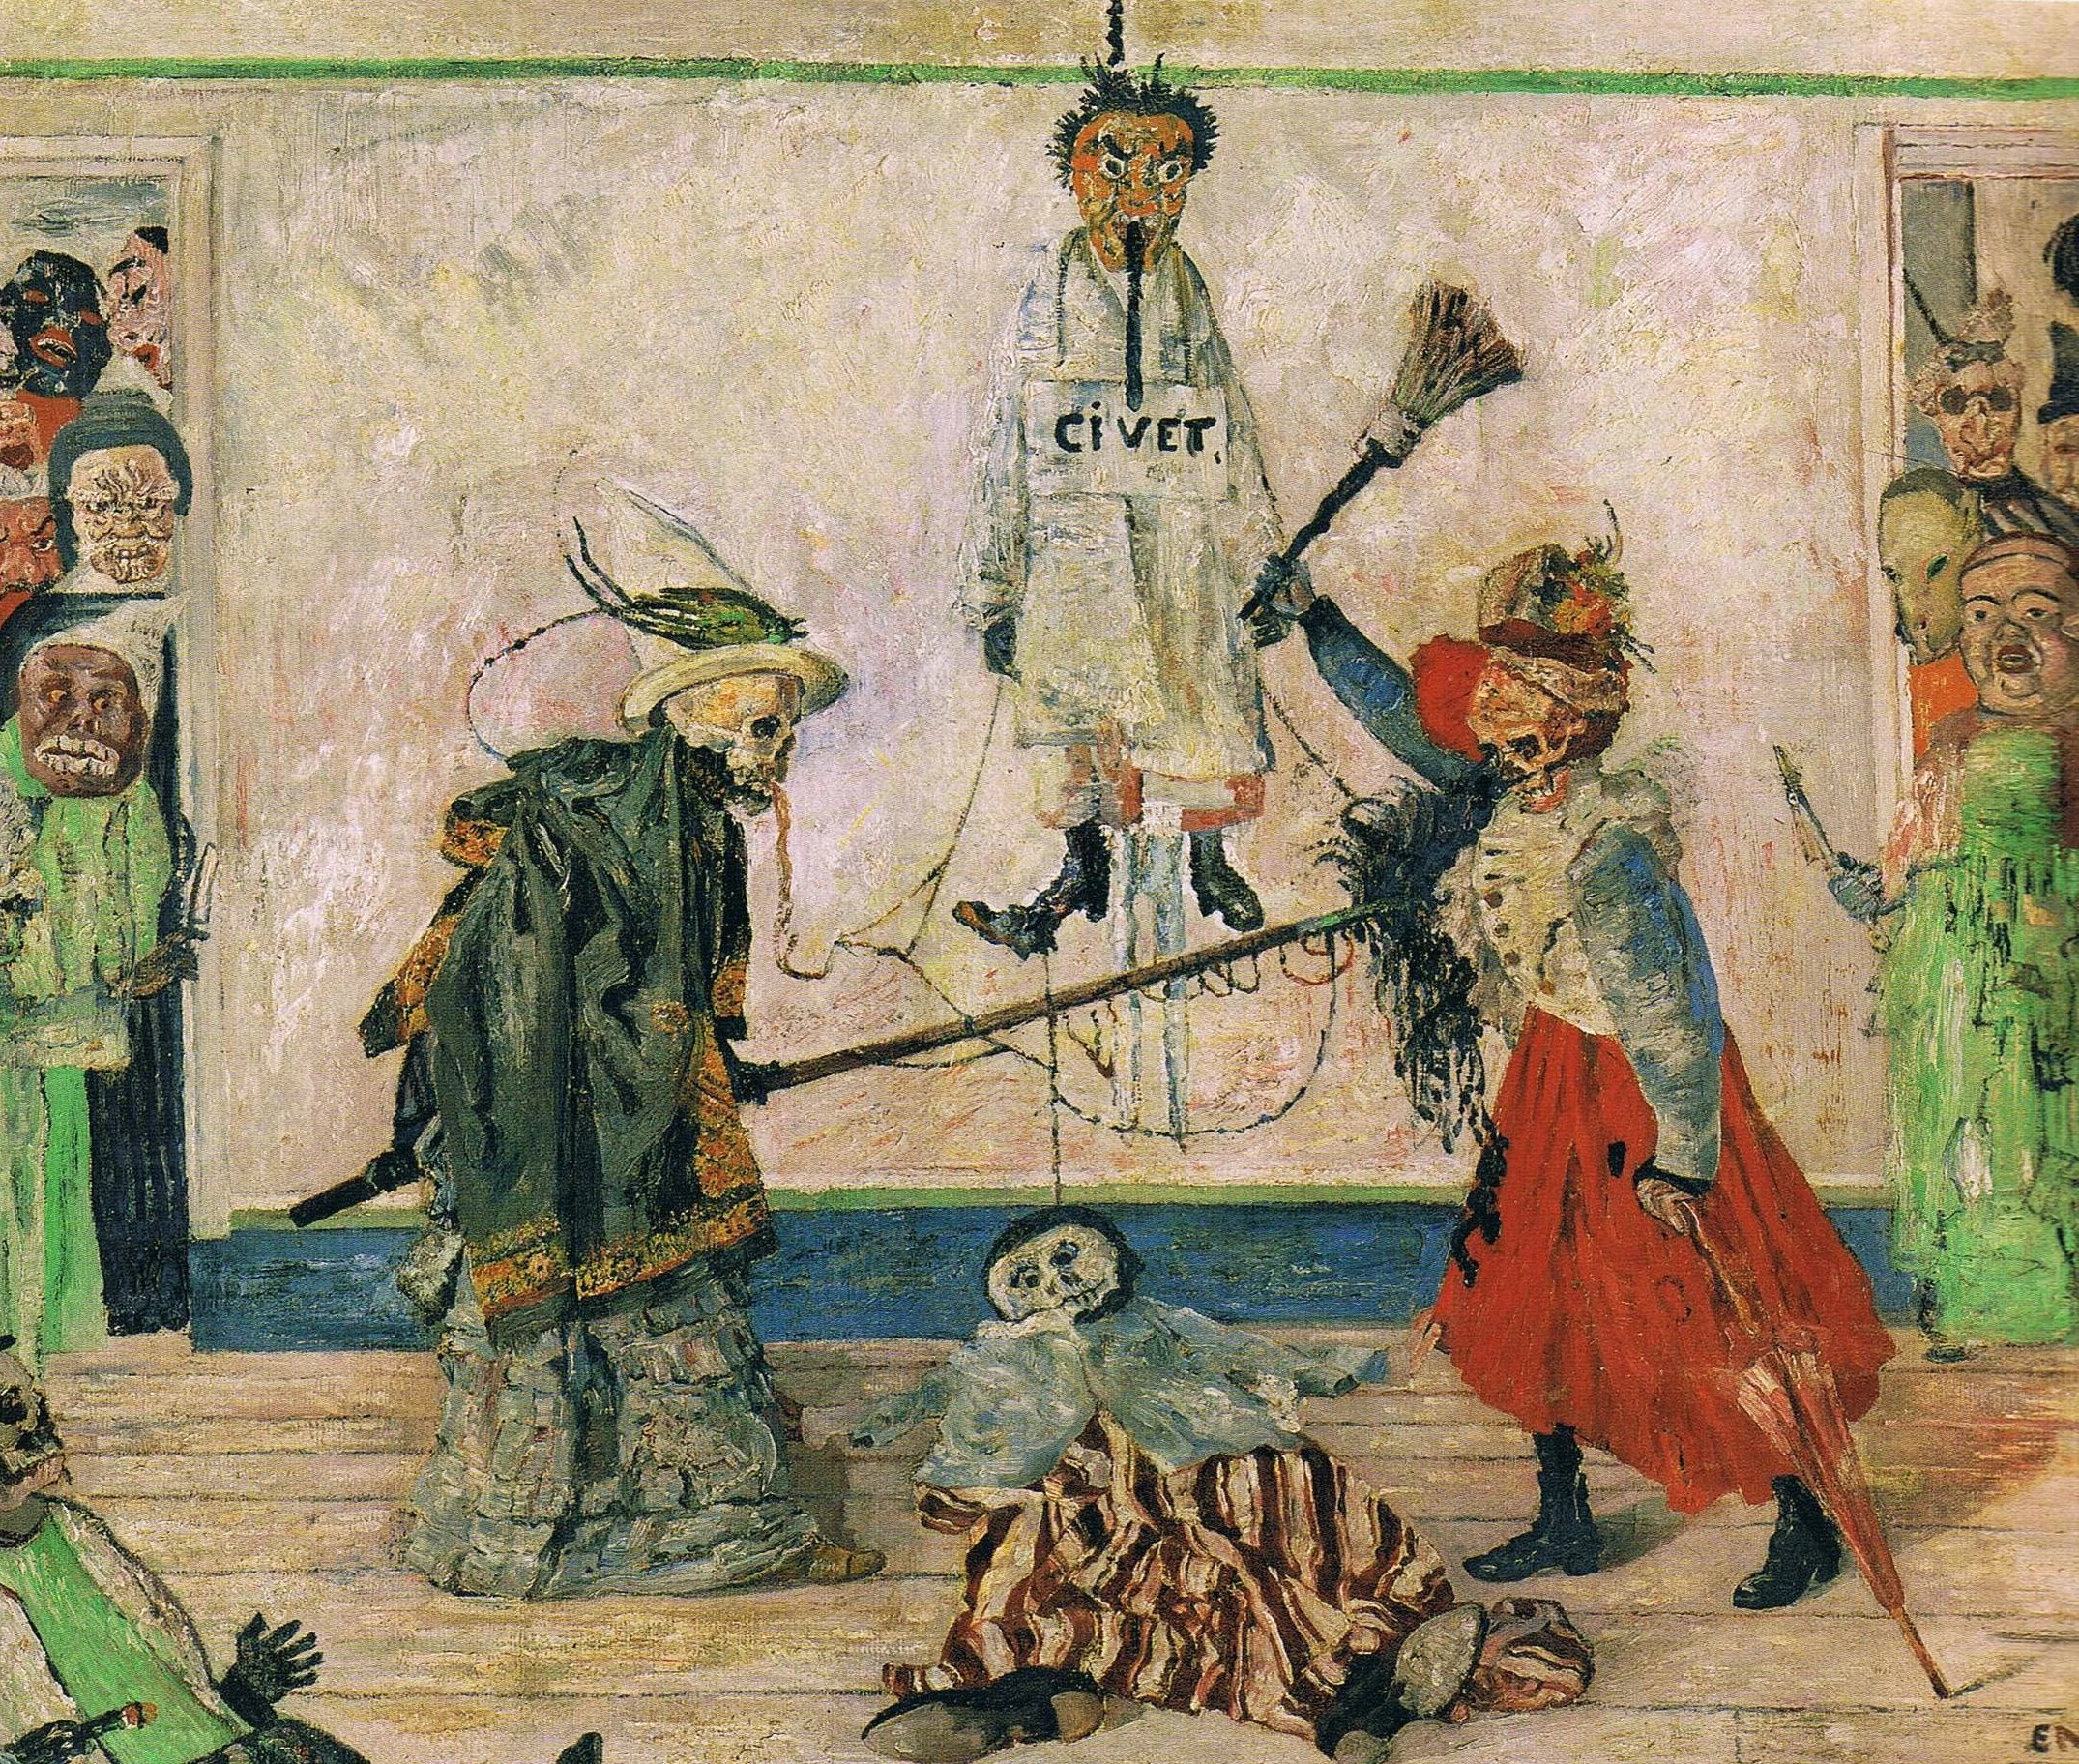 Skeletons Fighting over a Hanged Man, James Ensor